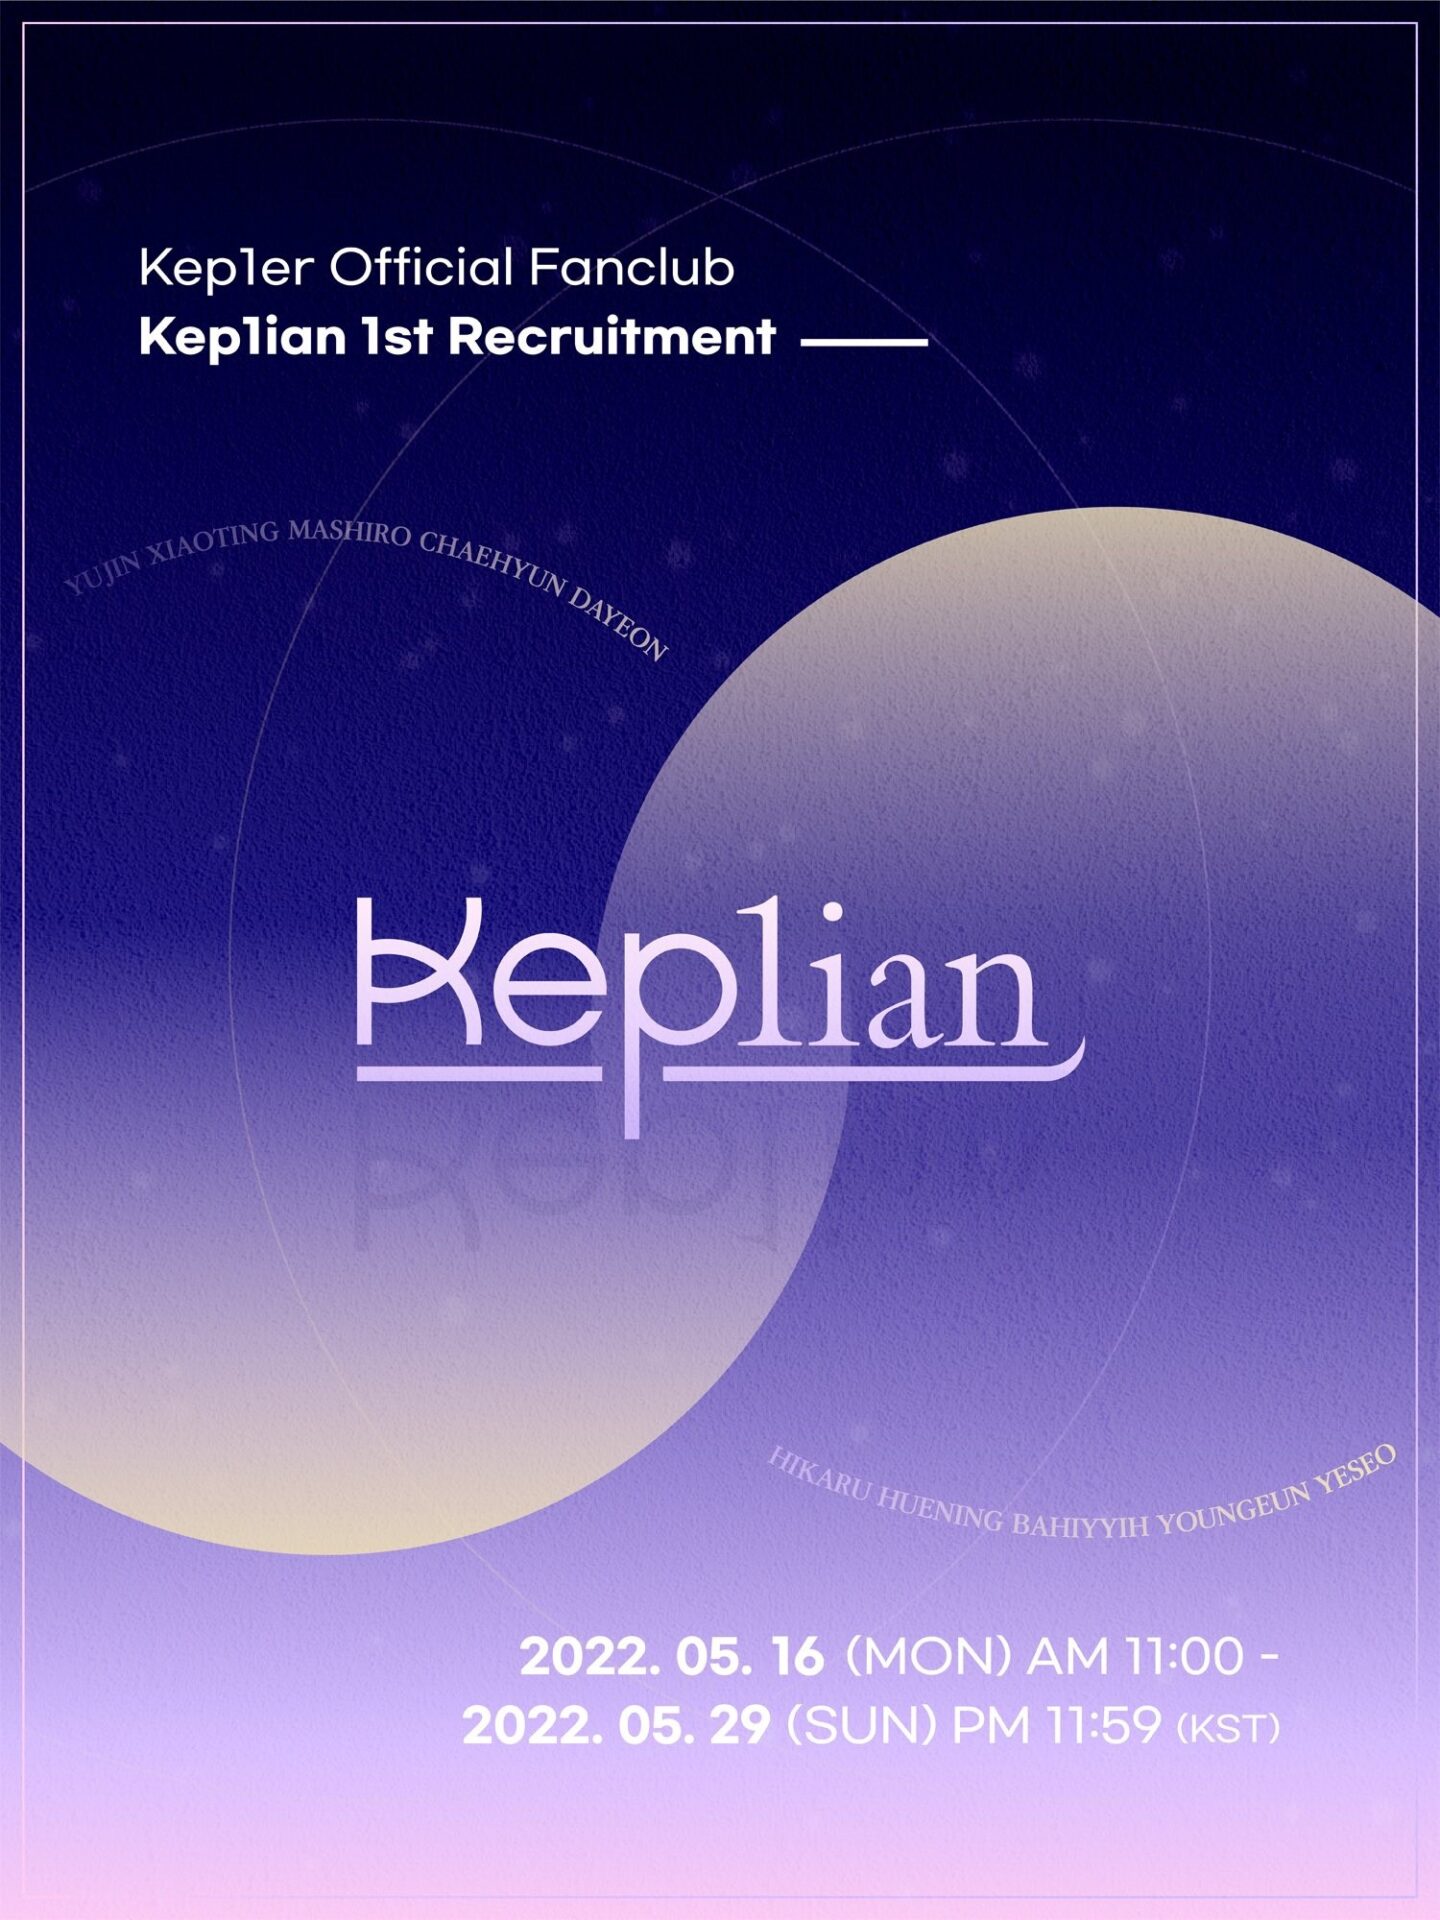 Kep1er】Kep1er 公式ファンクラブ「Kep1ian」1期募集内開始 - BLUE-X.TOKYO